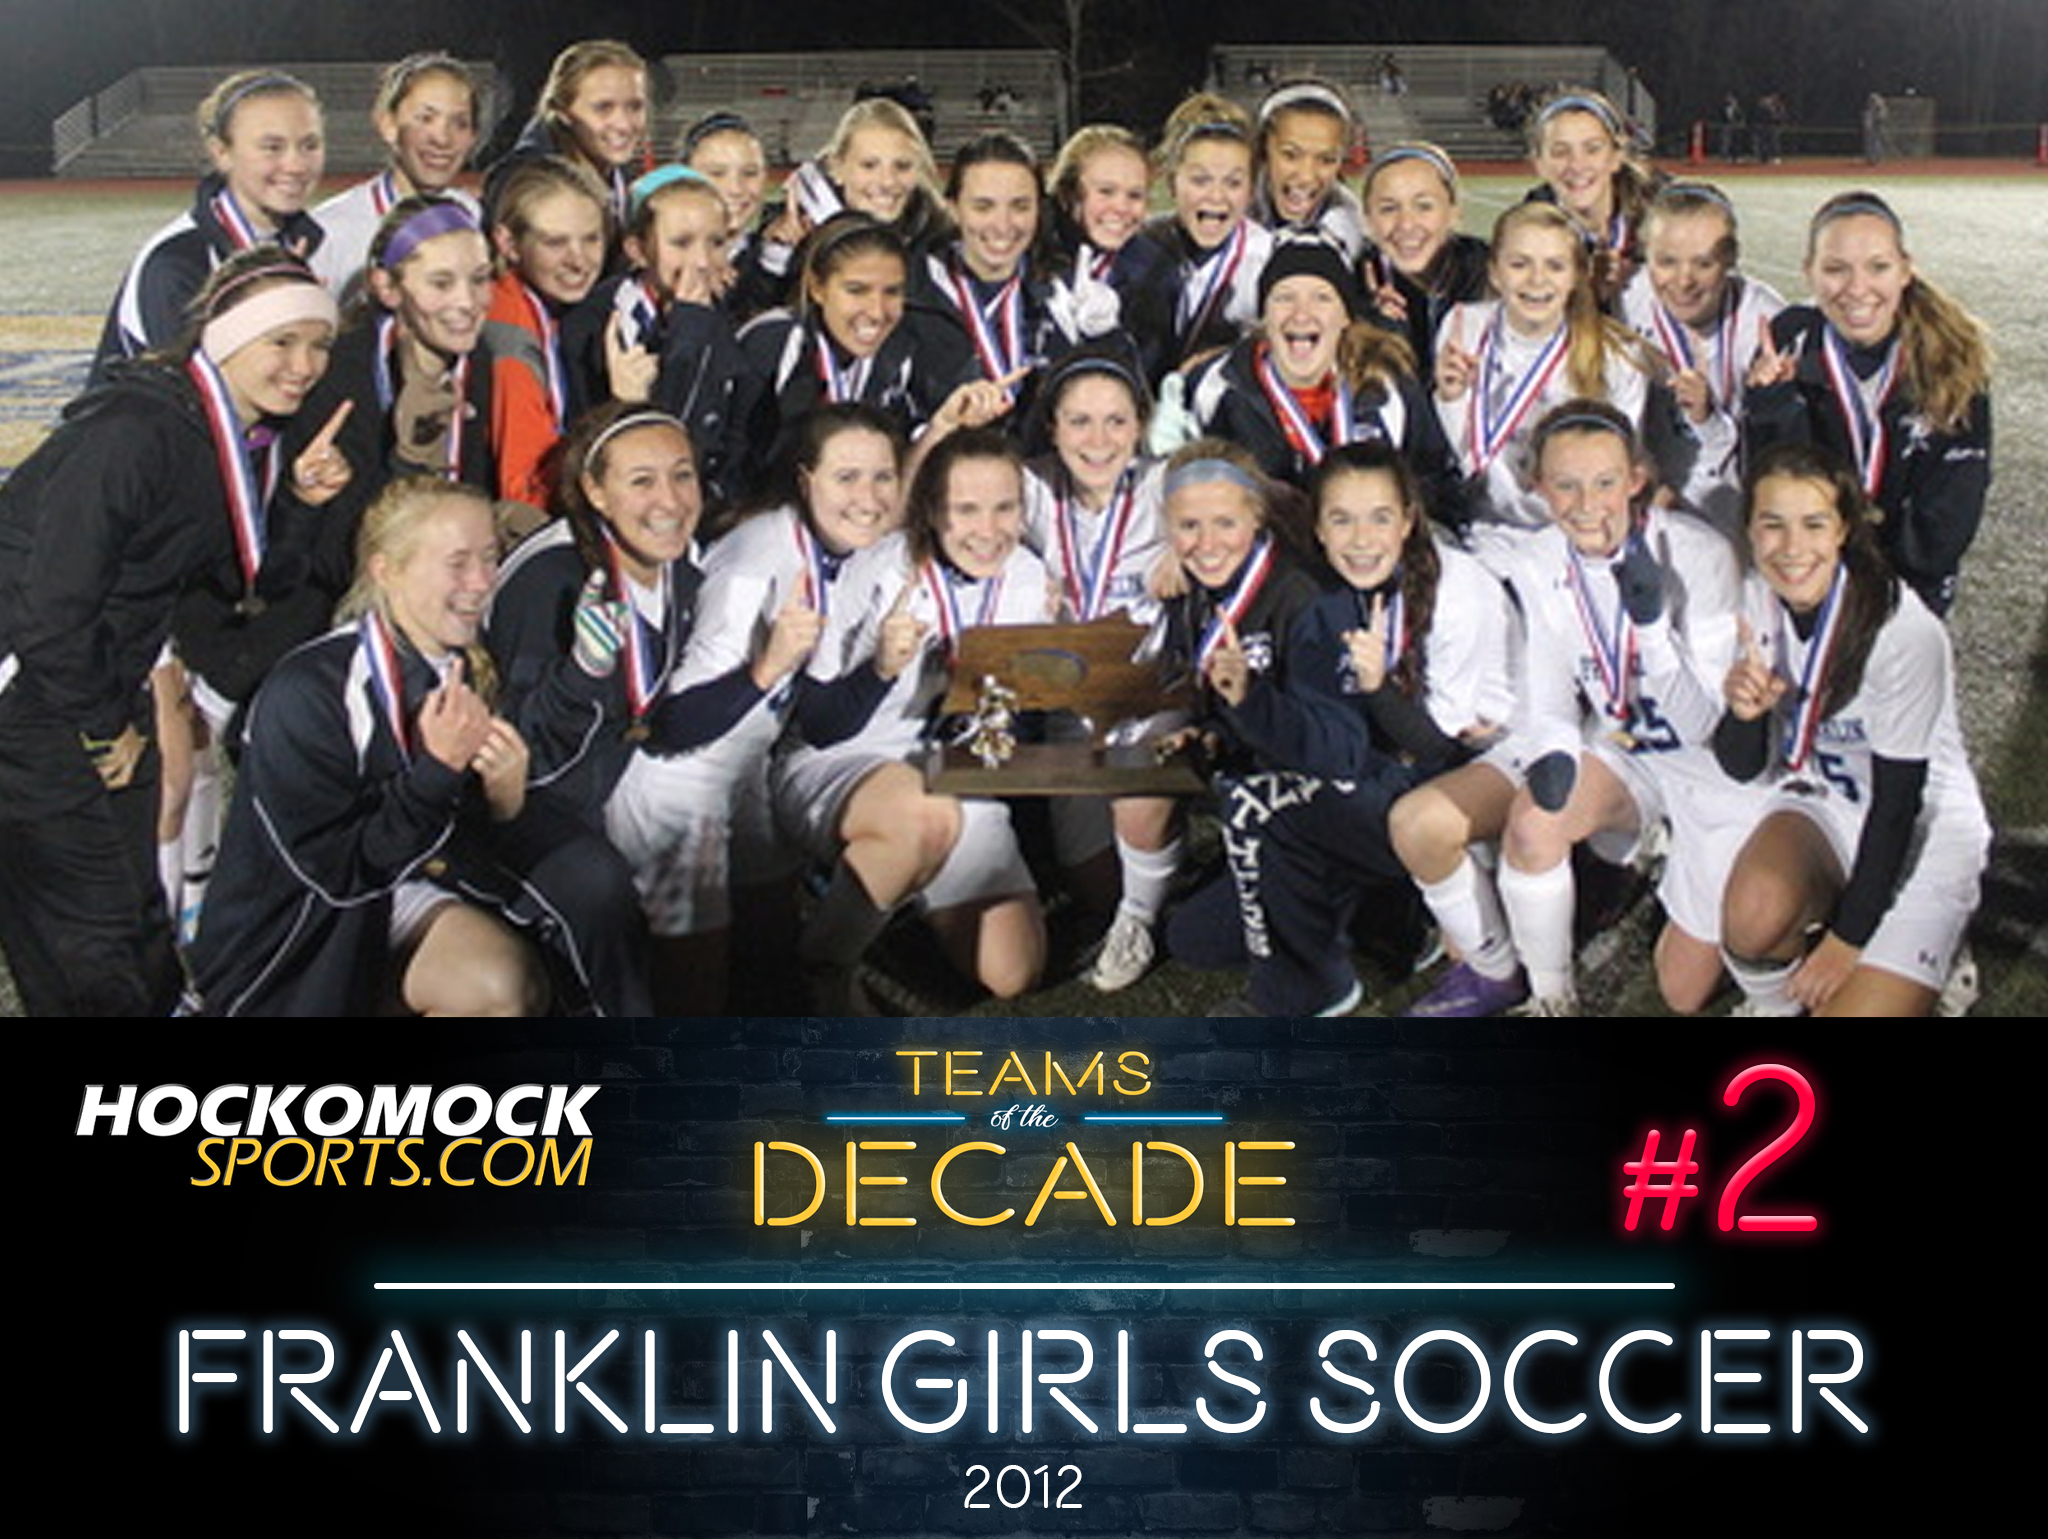 Franklin girls soccer